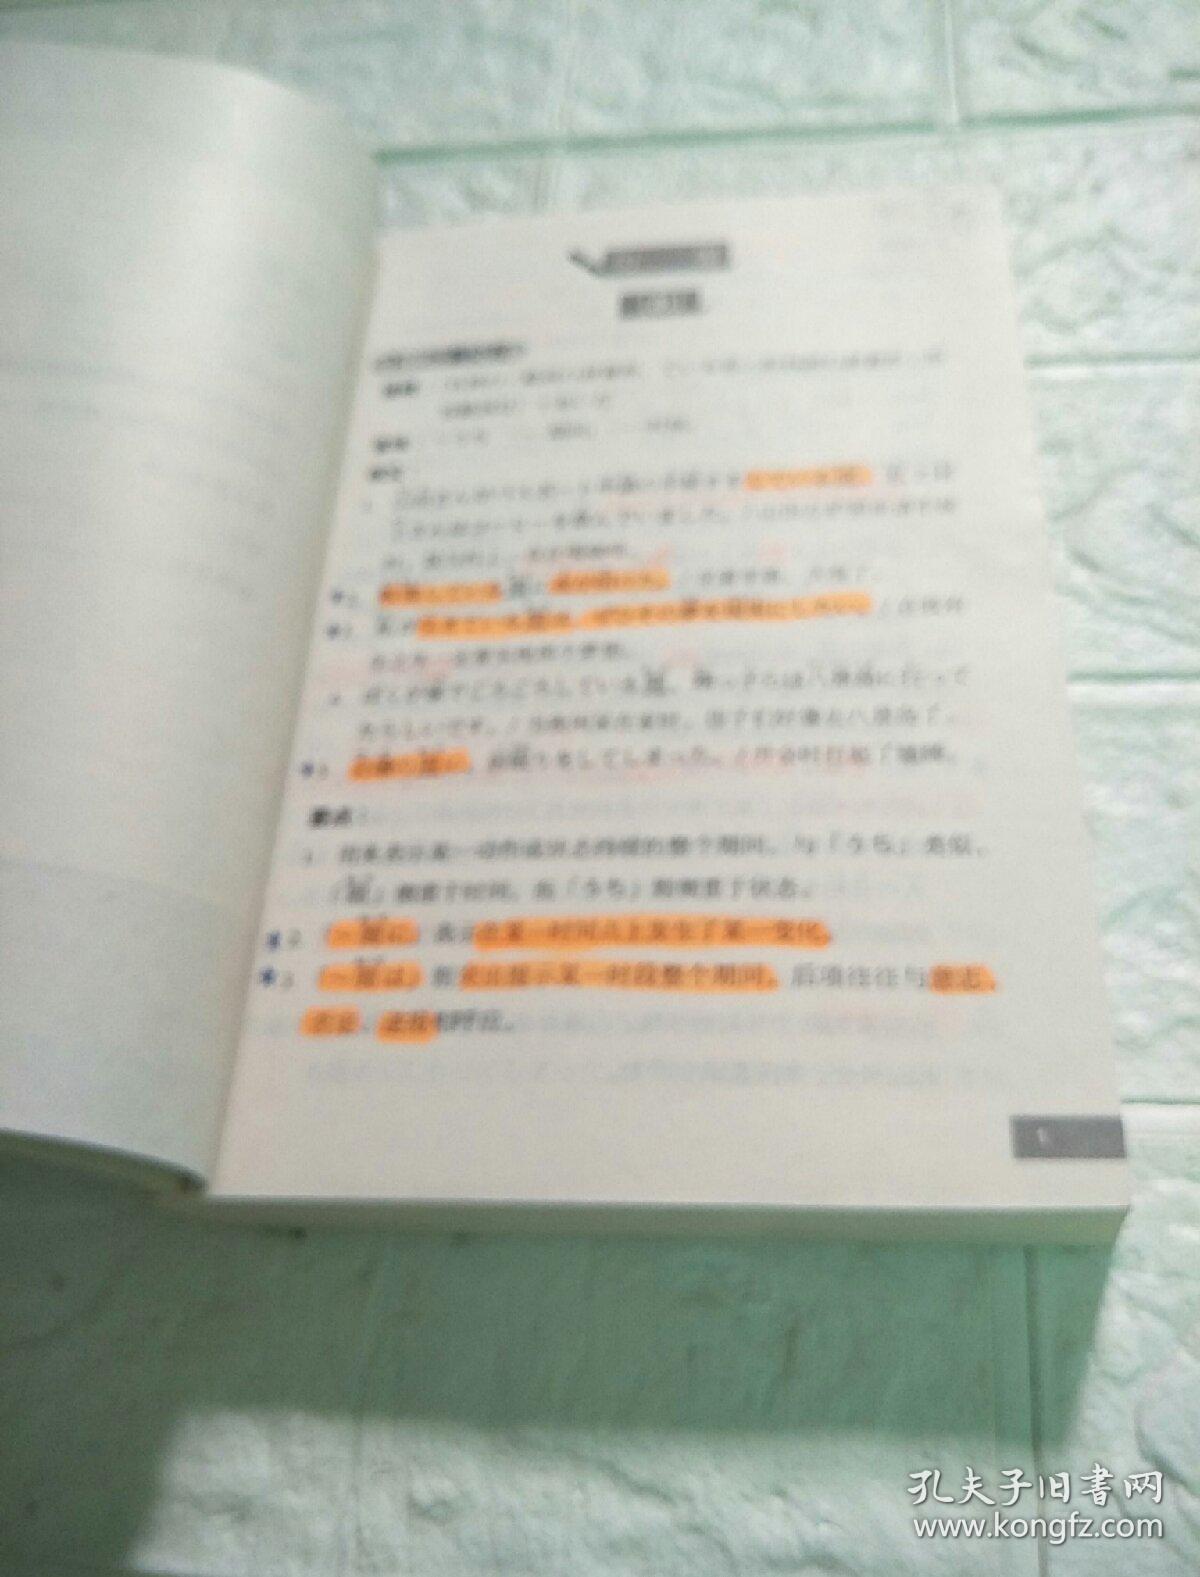 日语能力考试常见句型要点解析（前几页有彩笔画线，后边干净，看图）